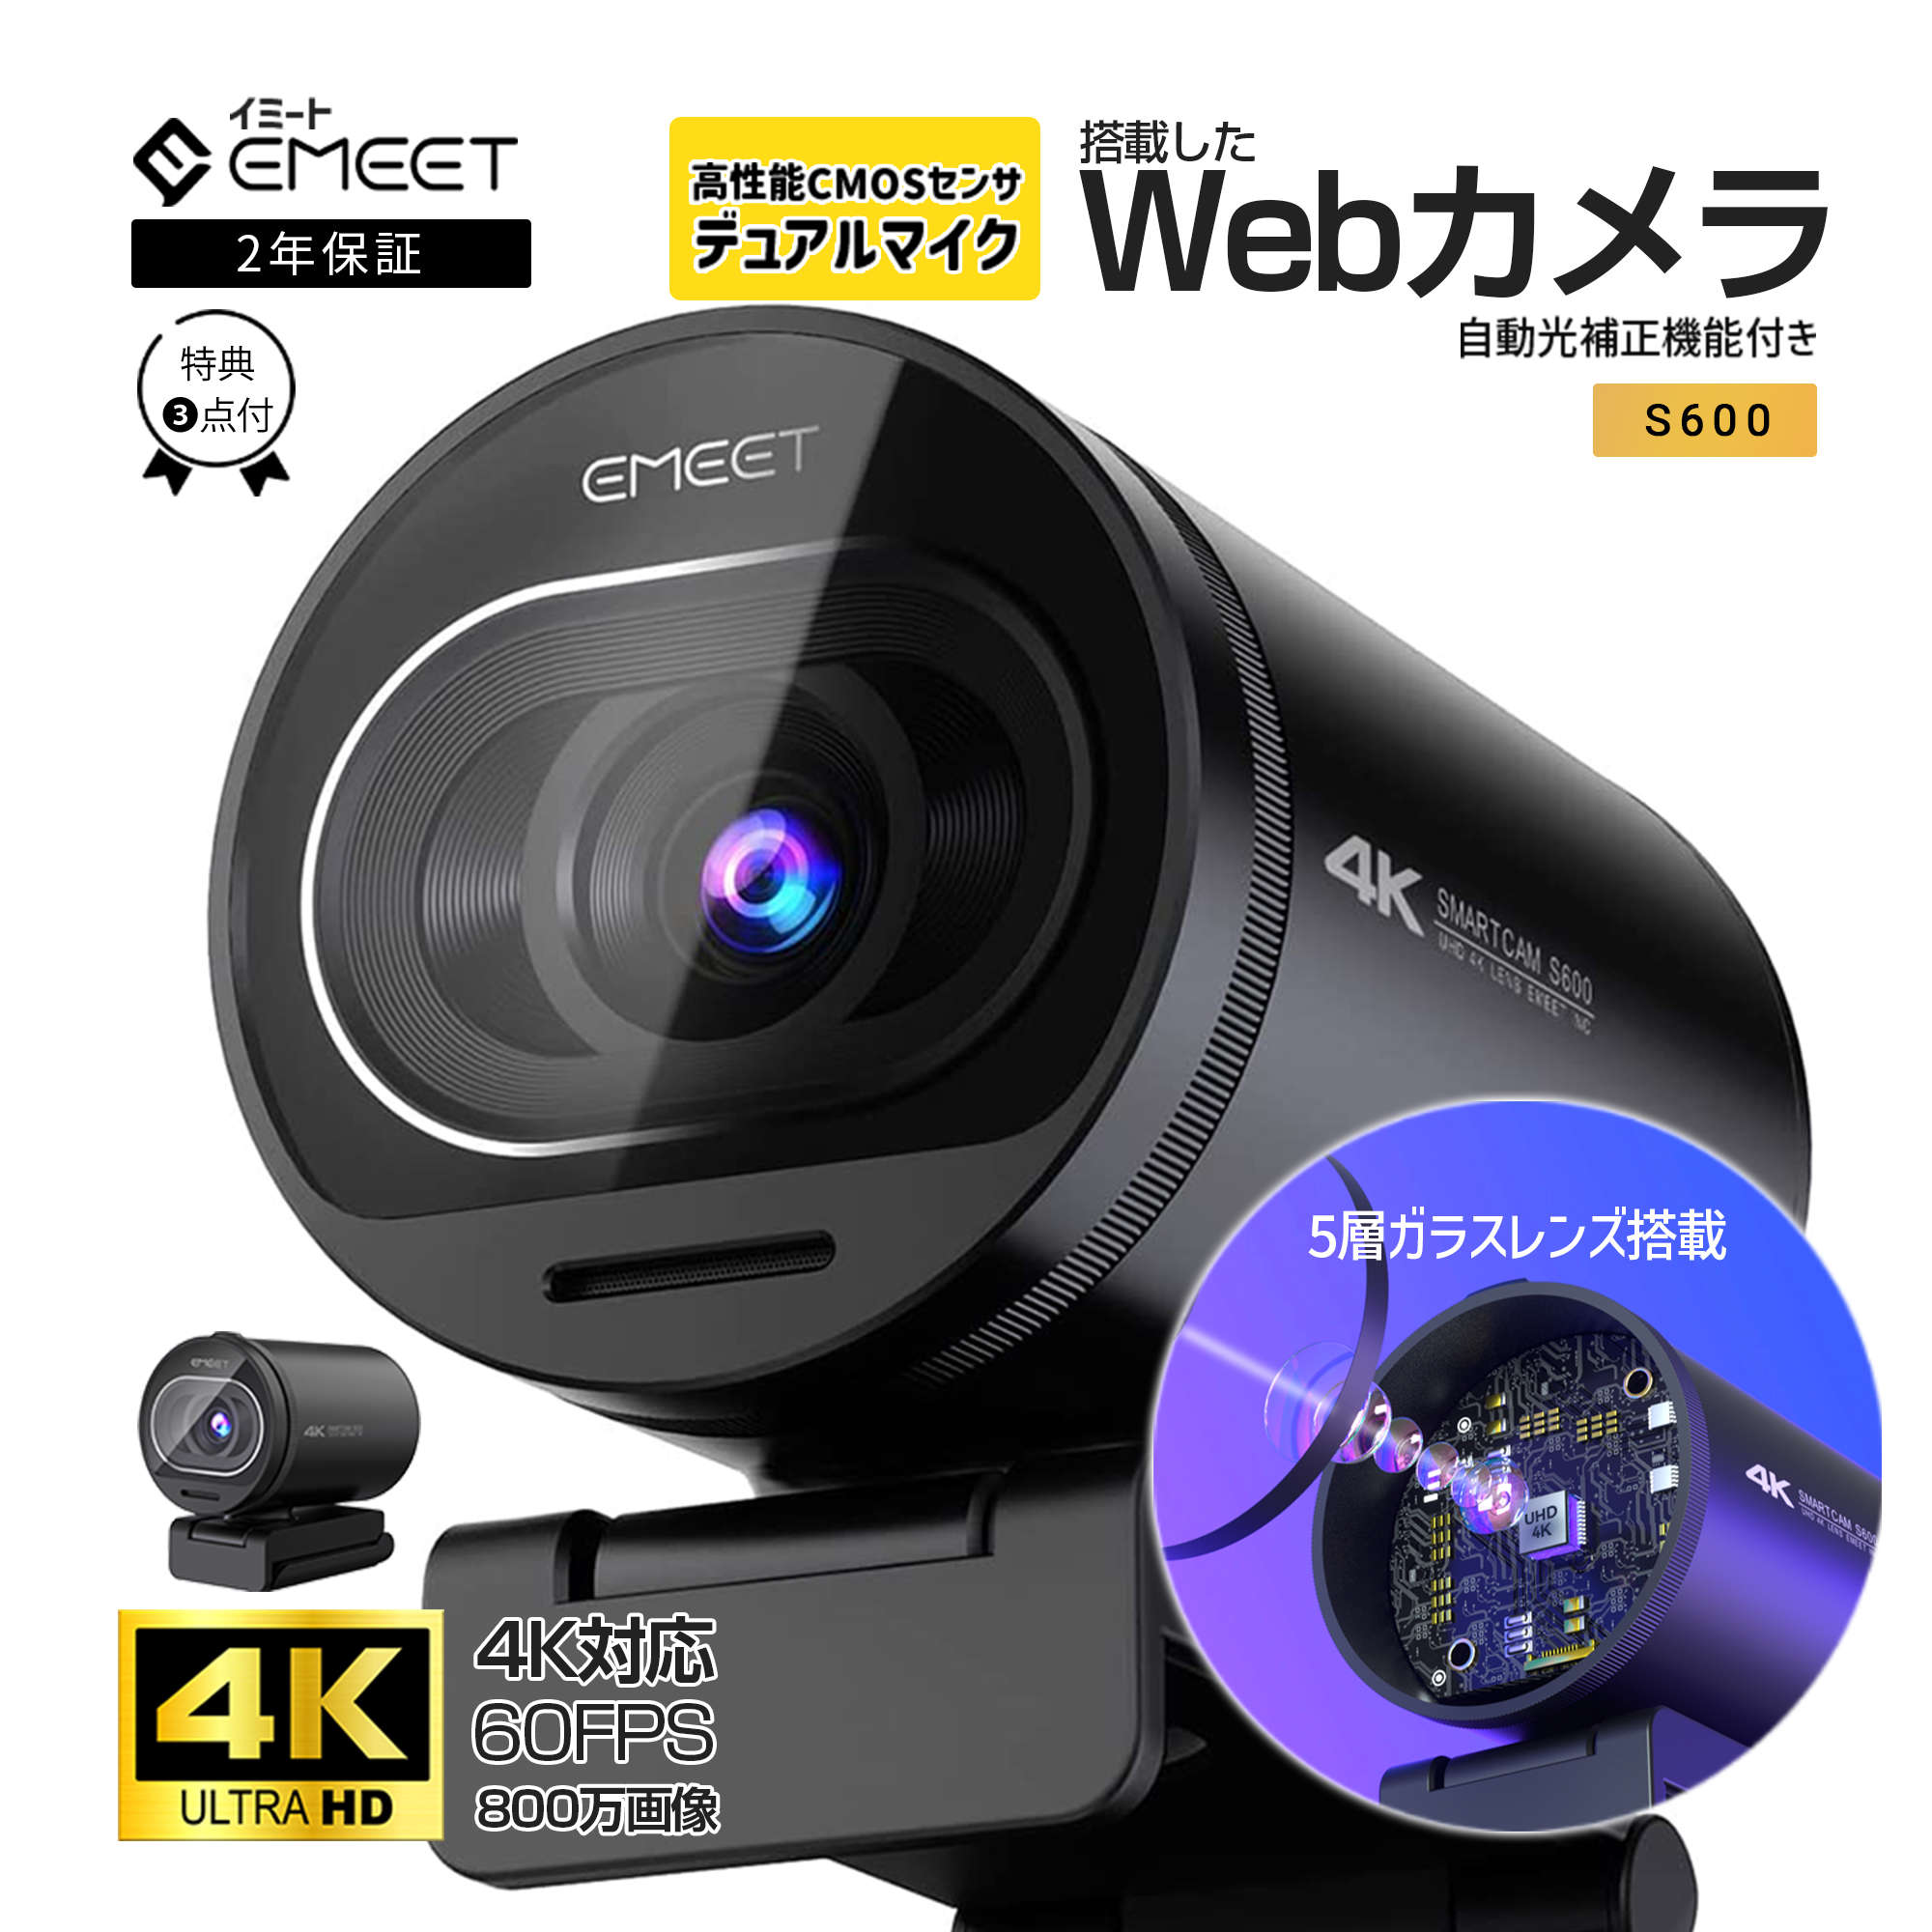 【13%OFF+Point最大12%|2年保証|特典付】 EMEET 4K ウェブカメラ S600 60fps Webカメラ PCカメラ オートフォーカス マイク付き Webカメラ 広角 外付け